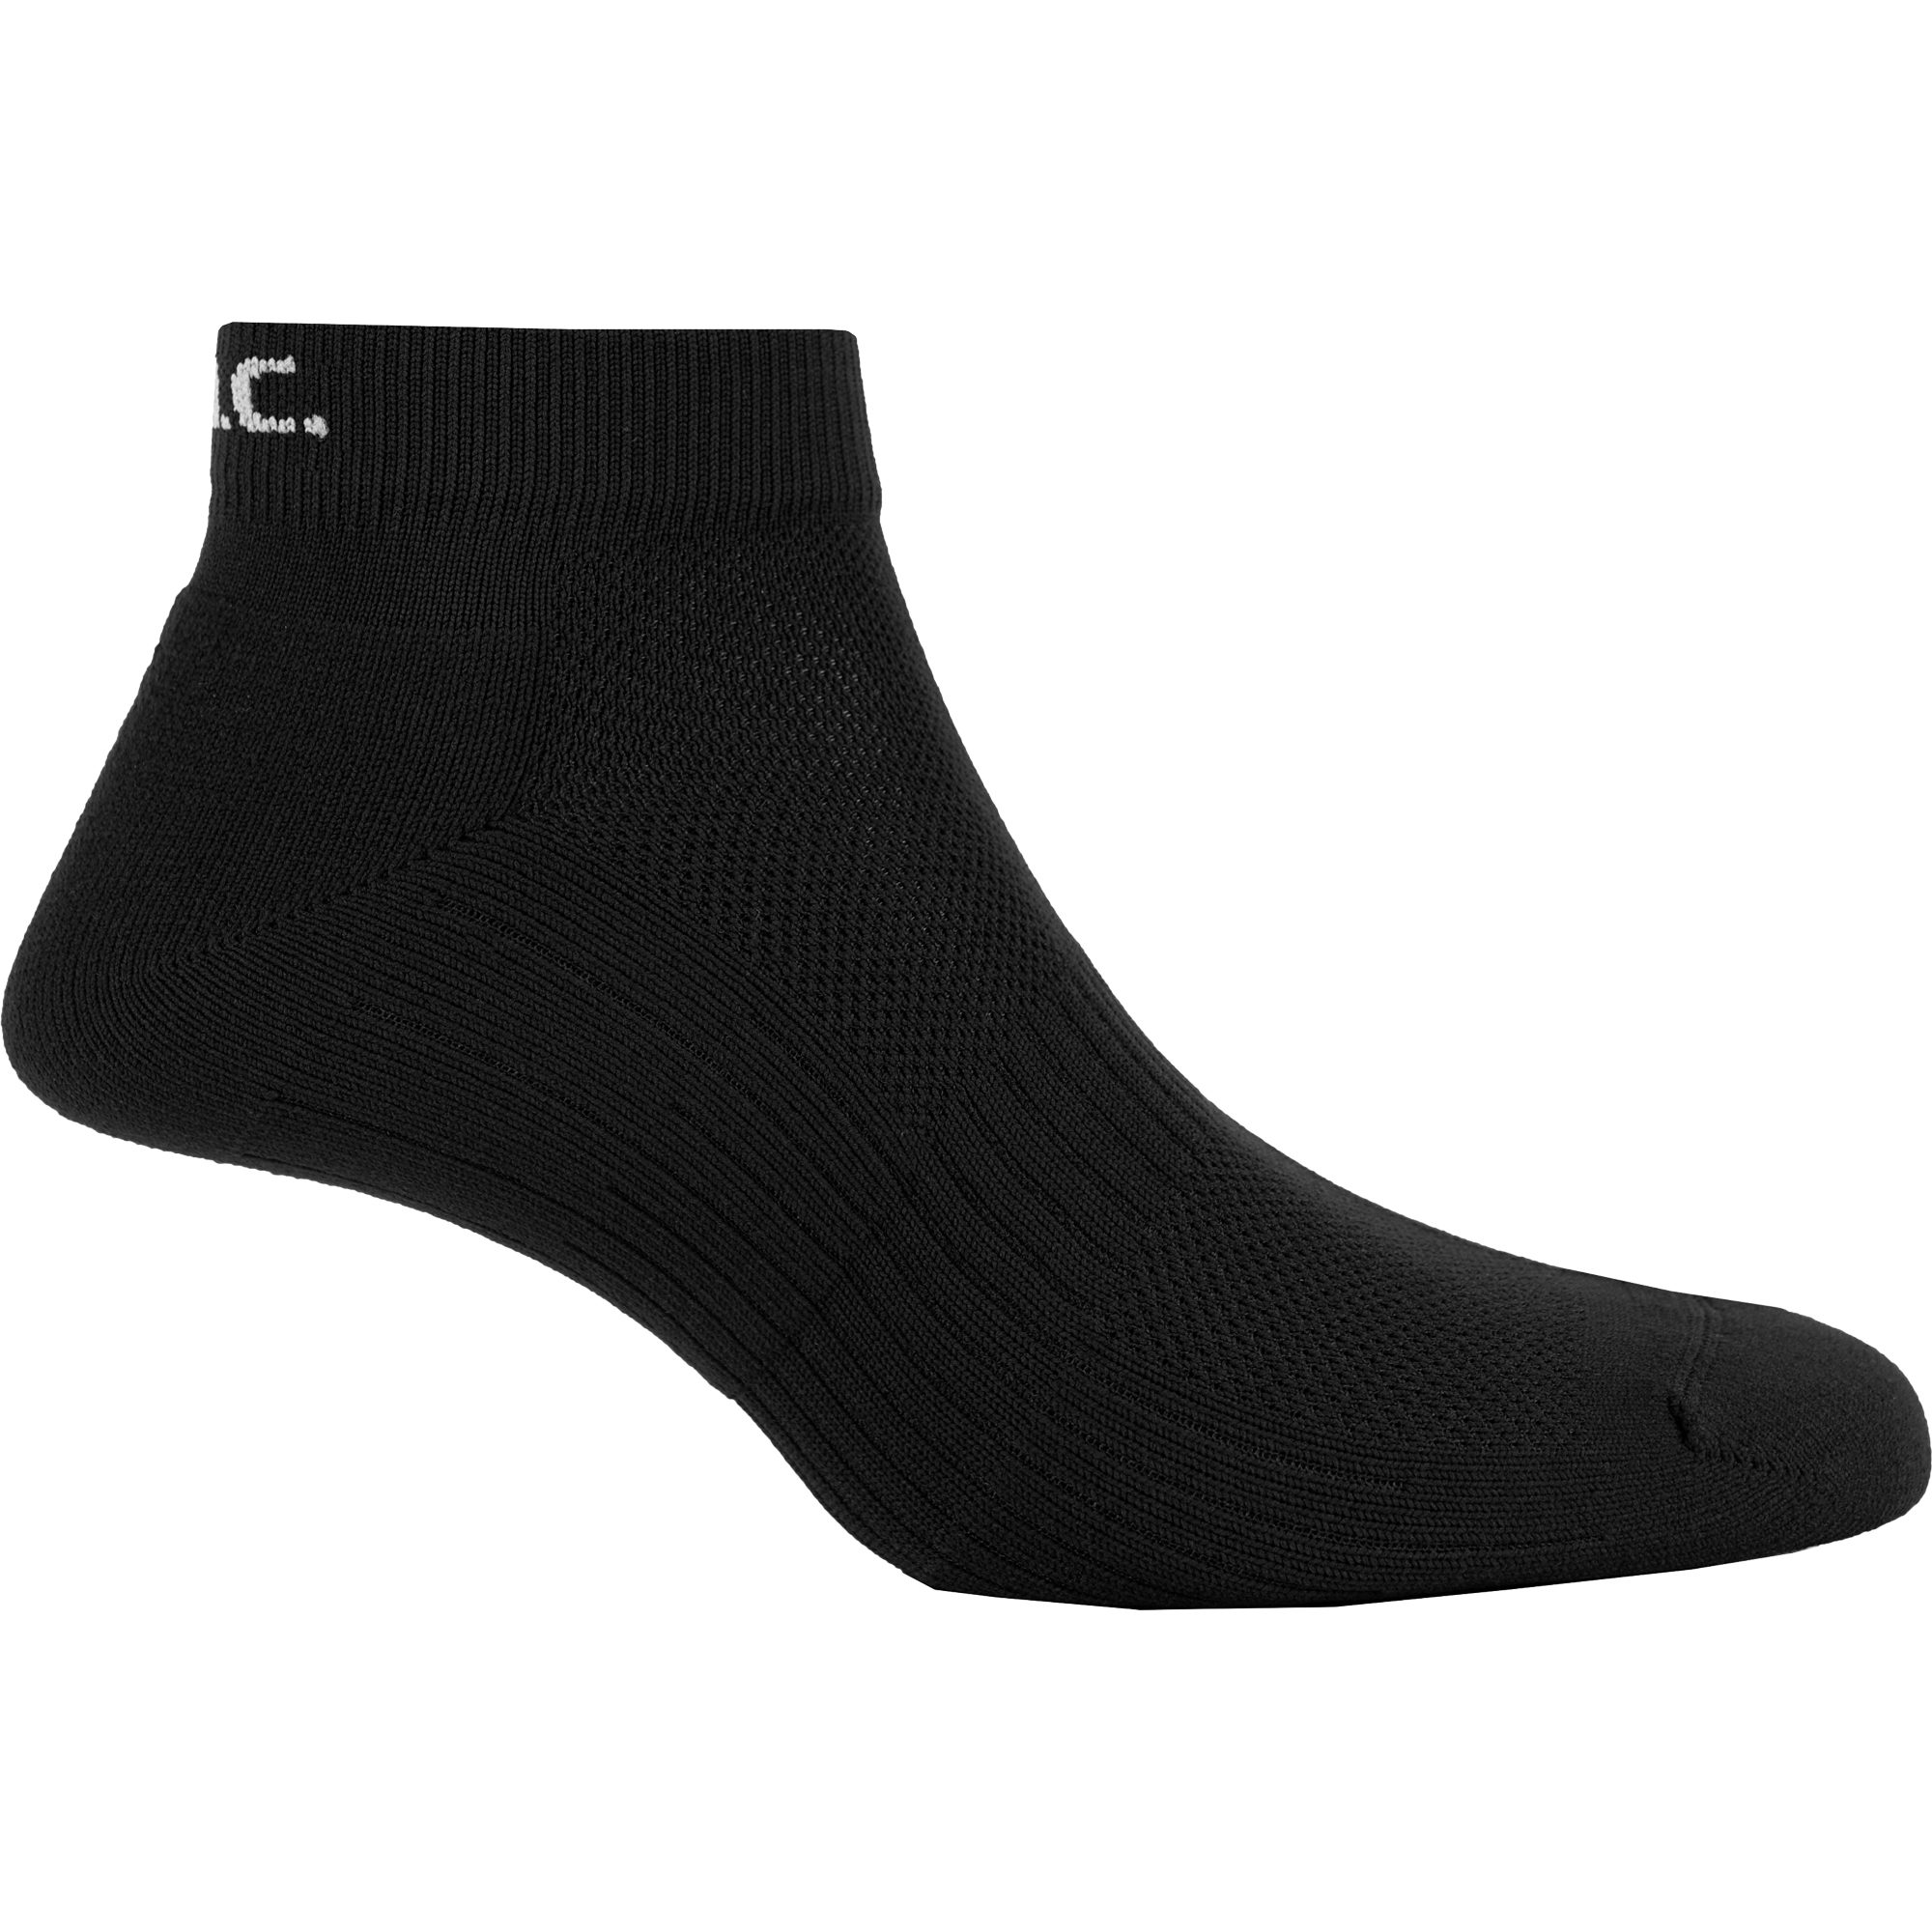 P.A.C. - 2.0 Quarter Function Pack of 2 Socks black at Sport Bittl Shop